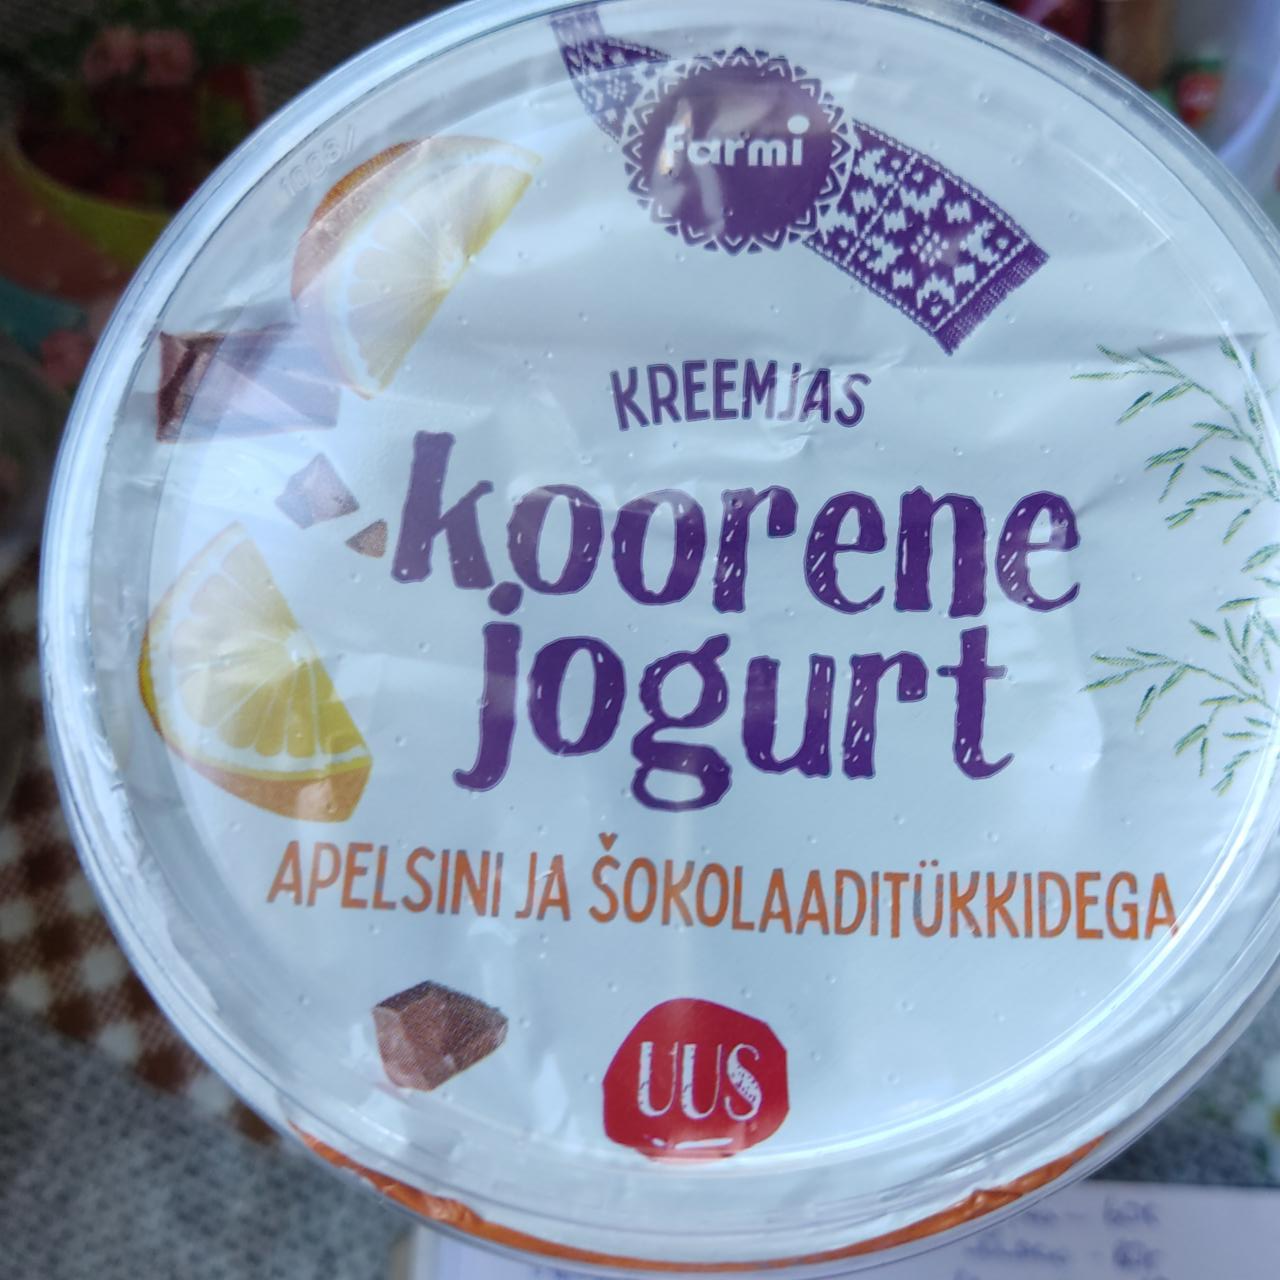 Фото - йогурт апельсин шоколад Koorene jogurt apelsini ja sokolaaditűkkidega Farmi